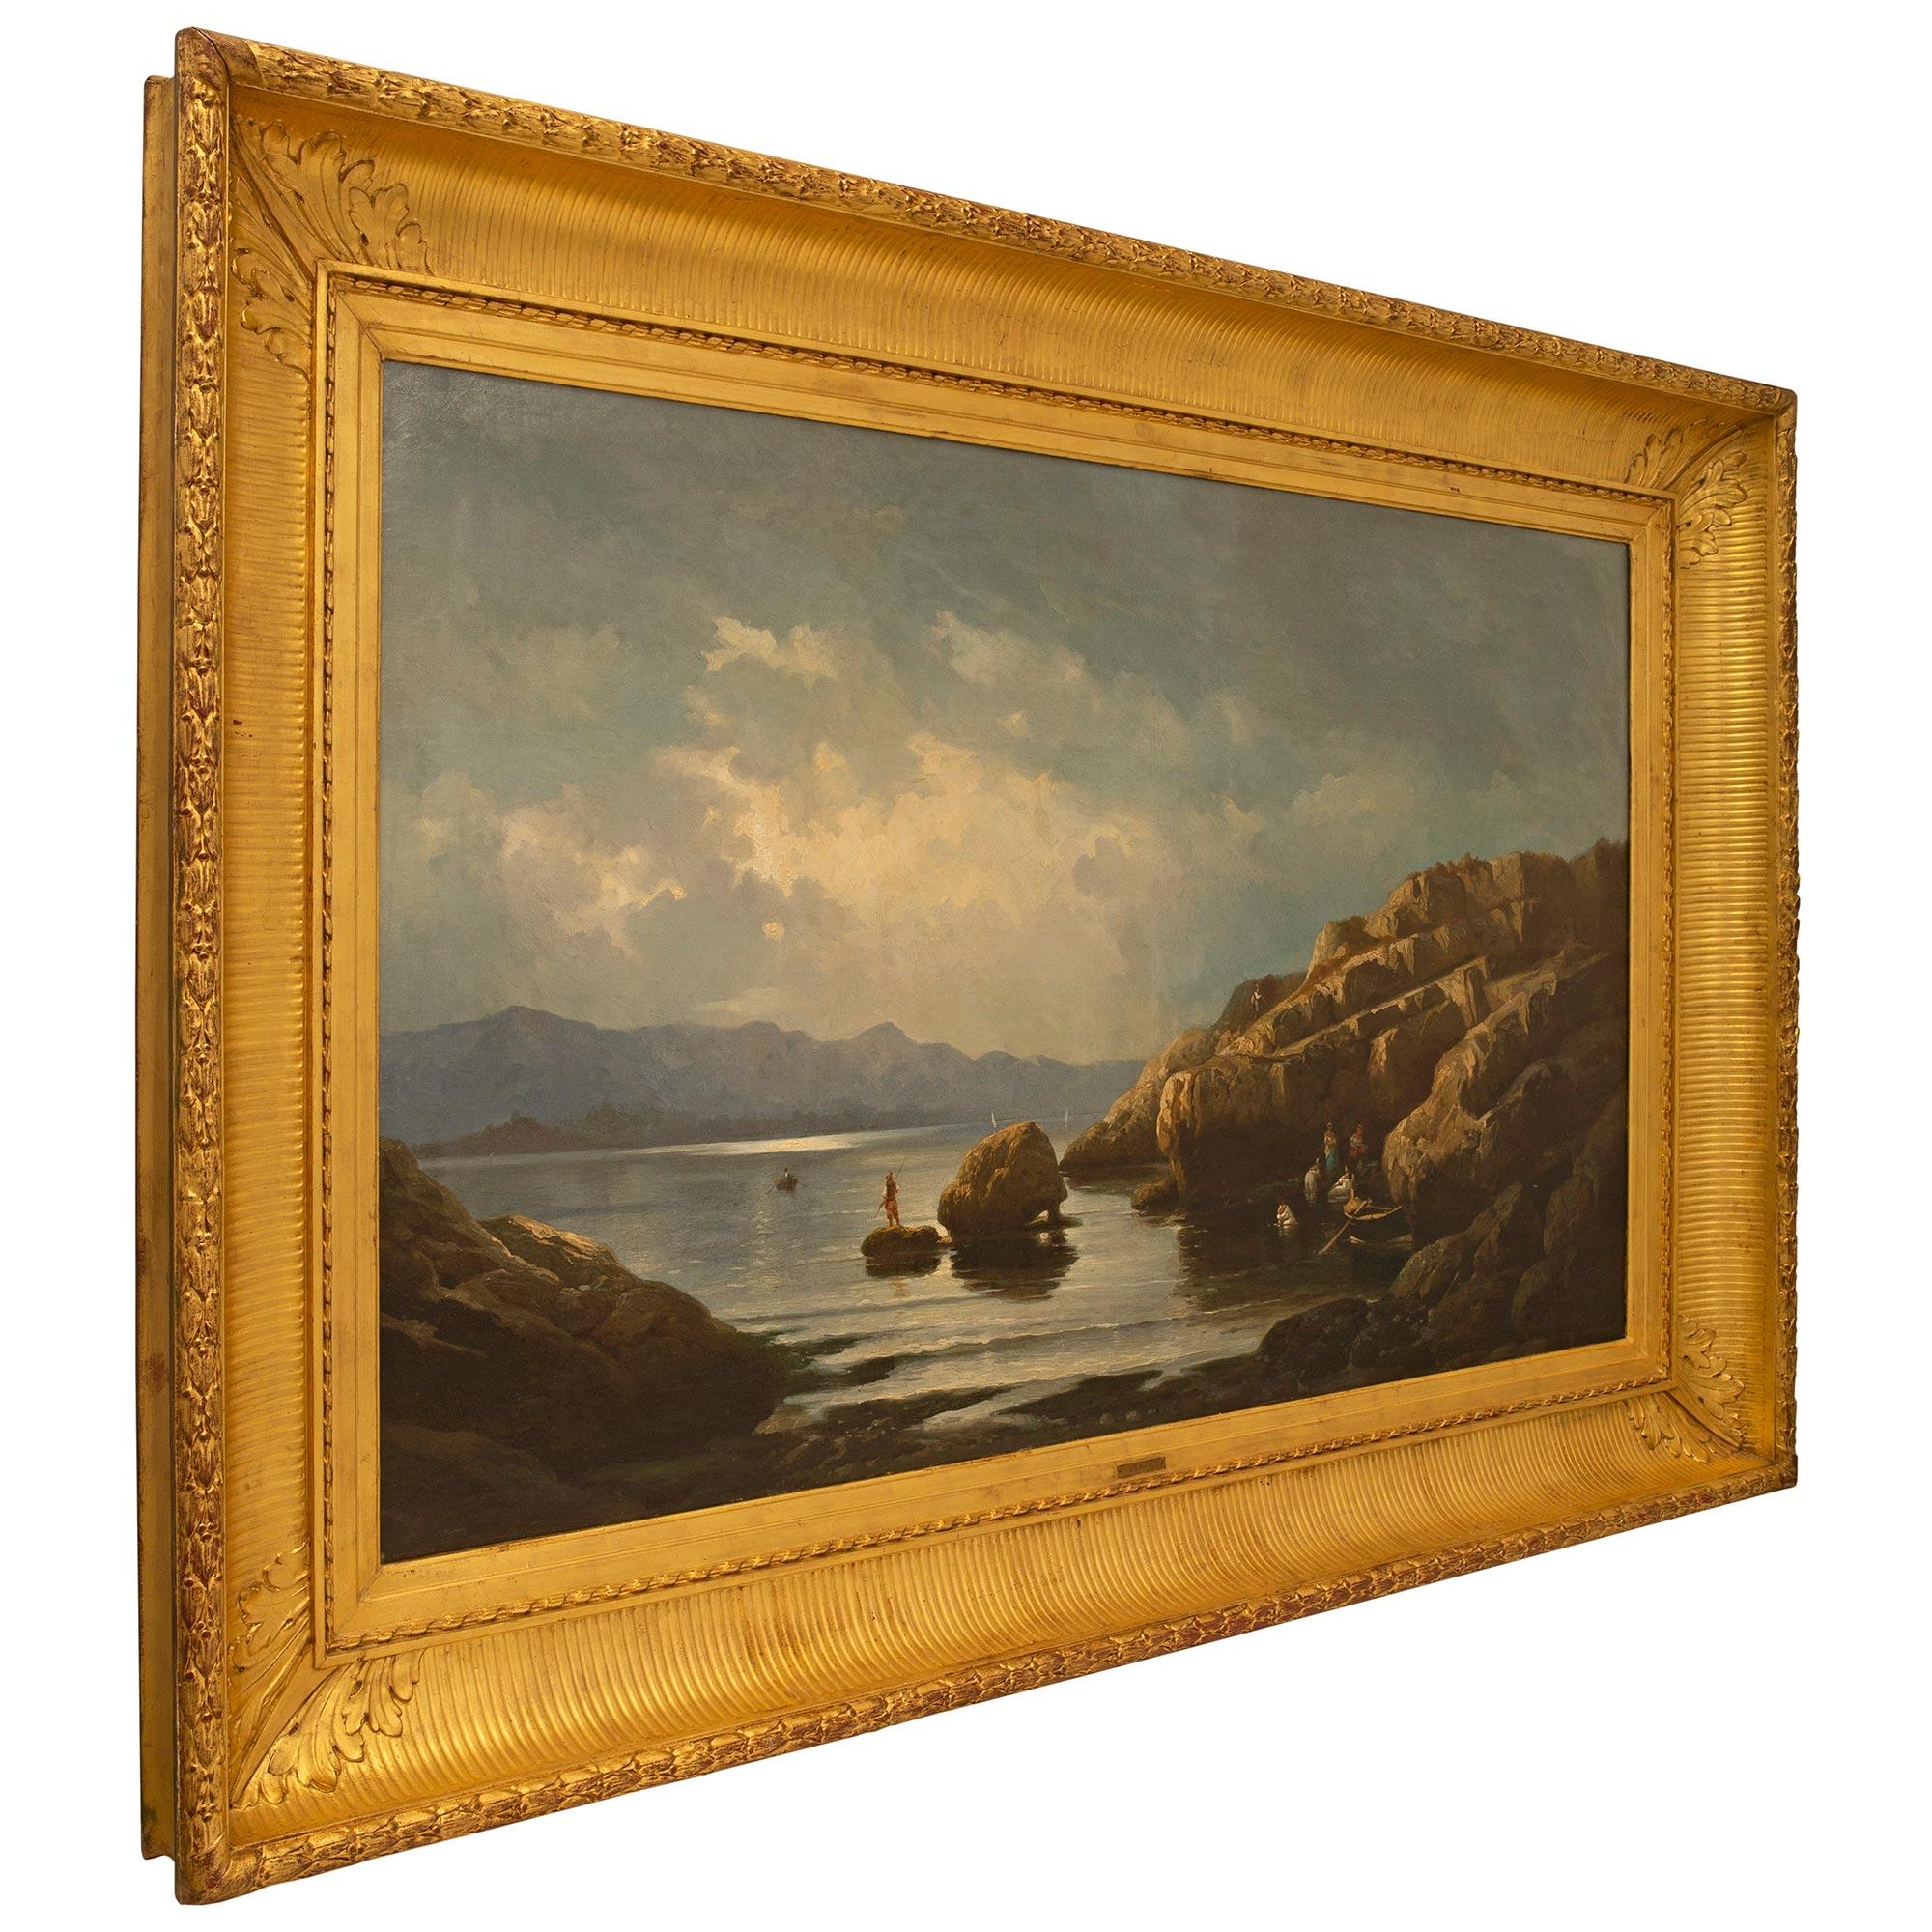 Une sensationnelle et grande peinture française du milieu du 19ème siècle à l'huile sur toile par Marie-Auguste Martin vers 1860. Cette belle peinture de paysage est placée dans son cadre original en bois doré avec une bande de laurier richement